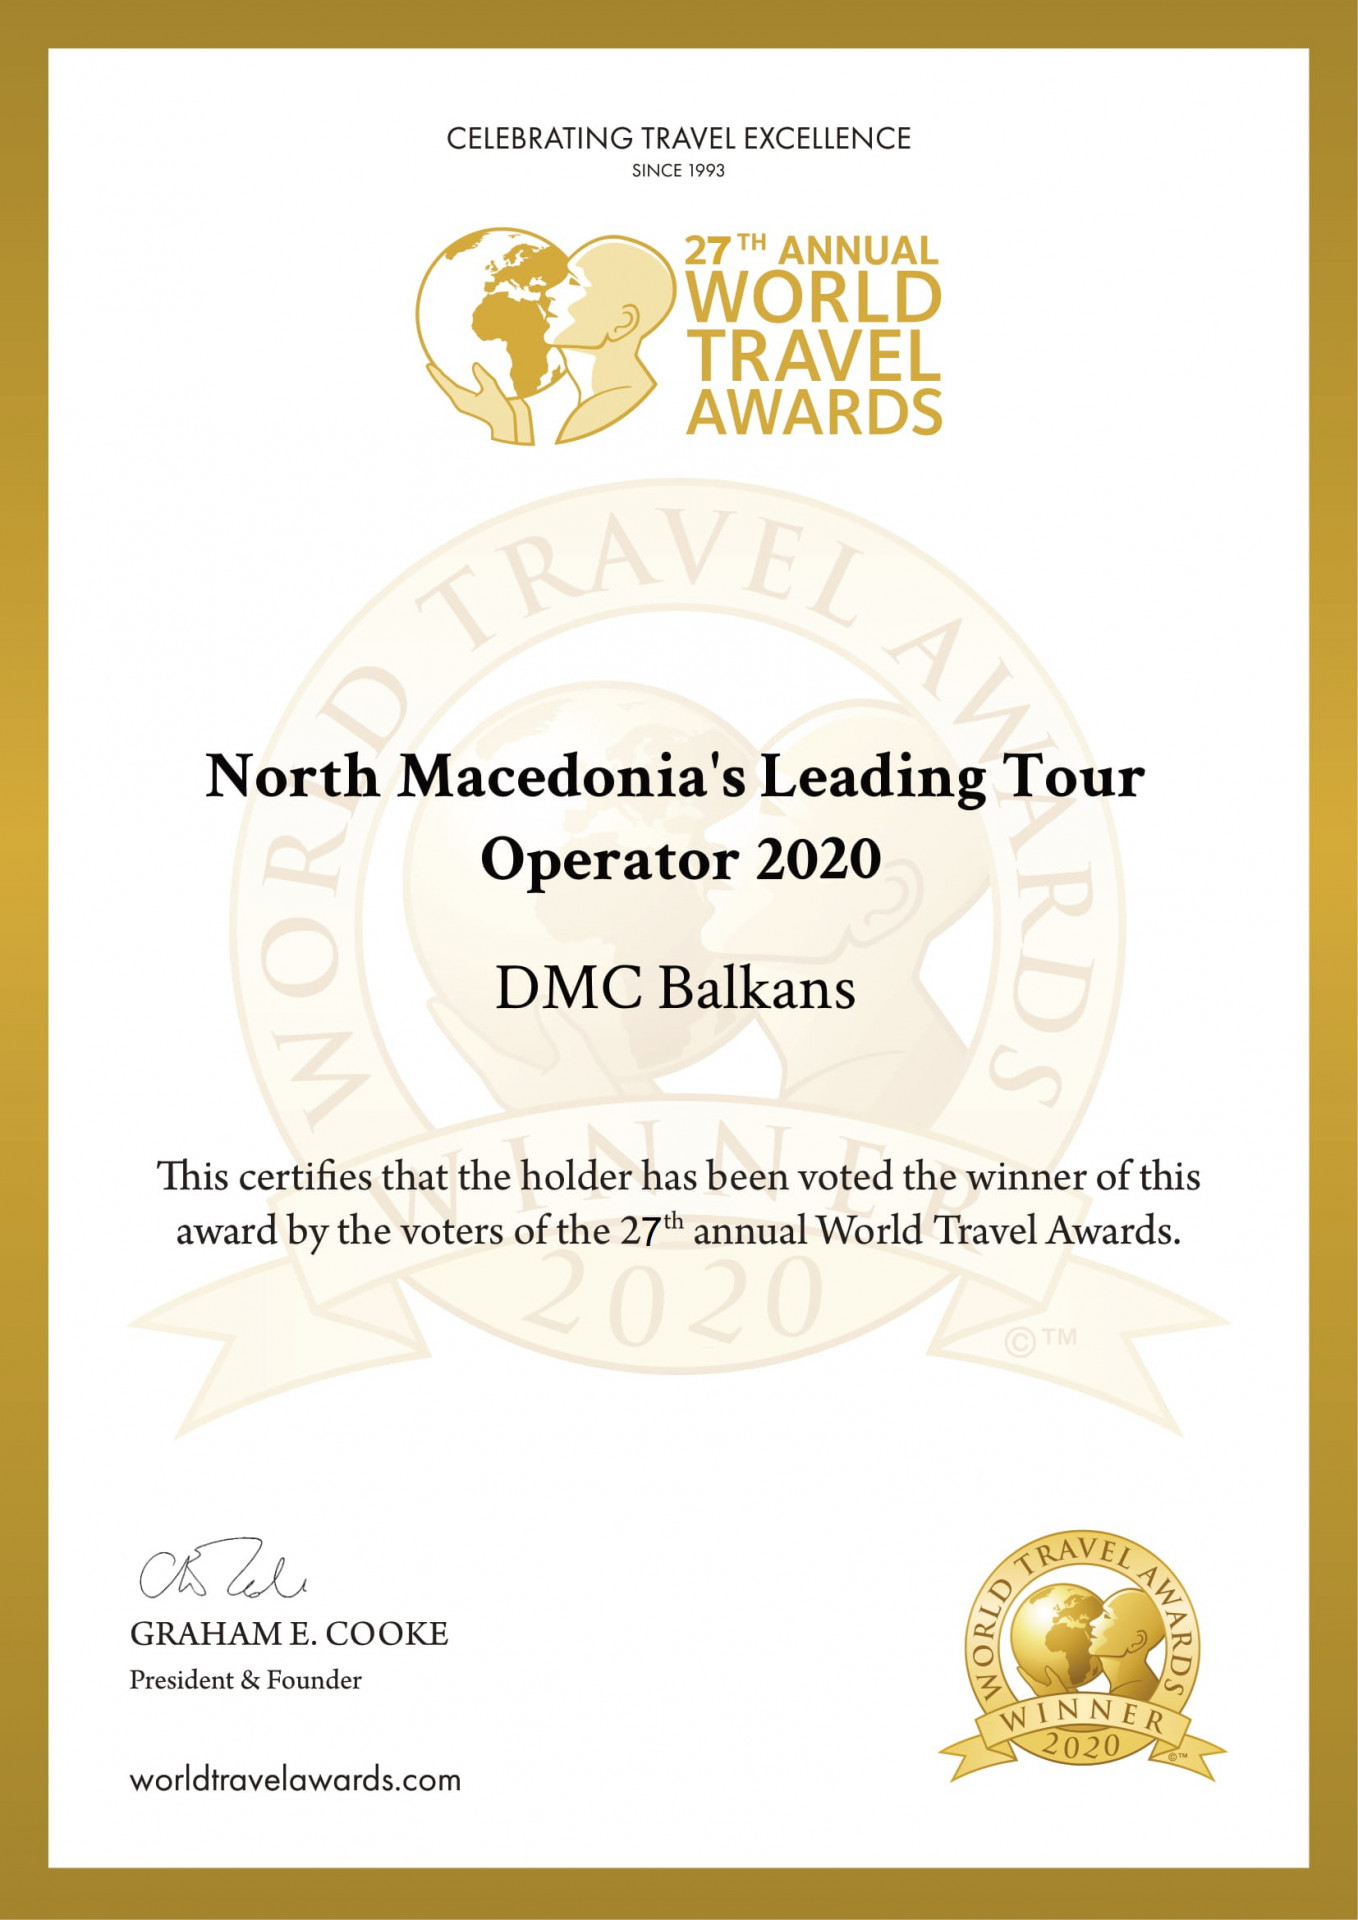 DMC Balkans Travel & Events: tres veces seguidas, el mejor operador turístico entrante para Macedonia del Norte